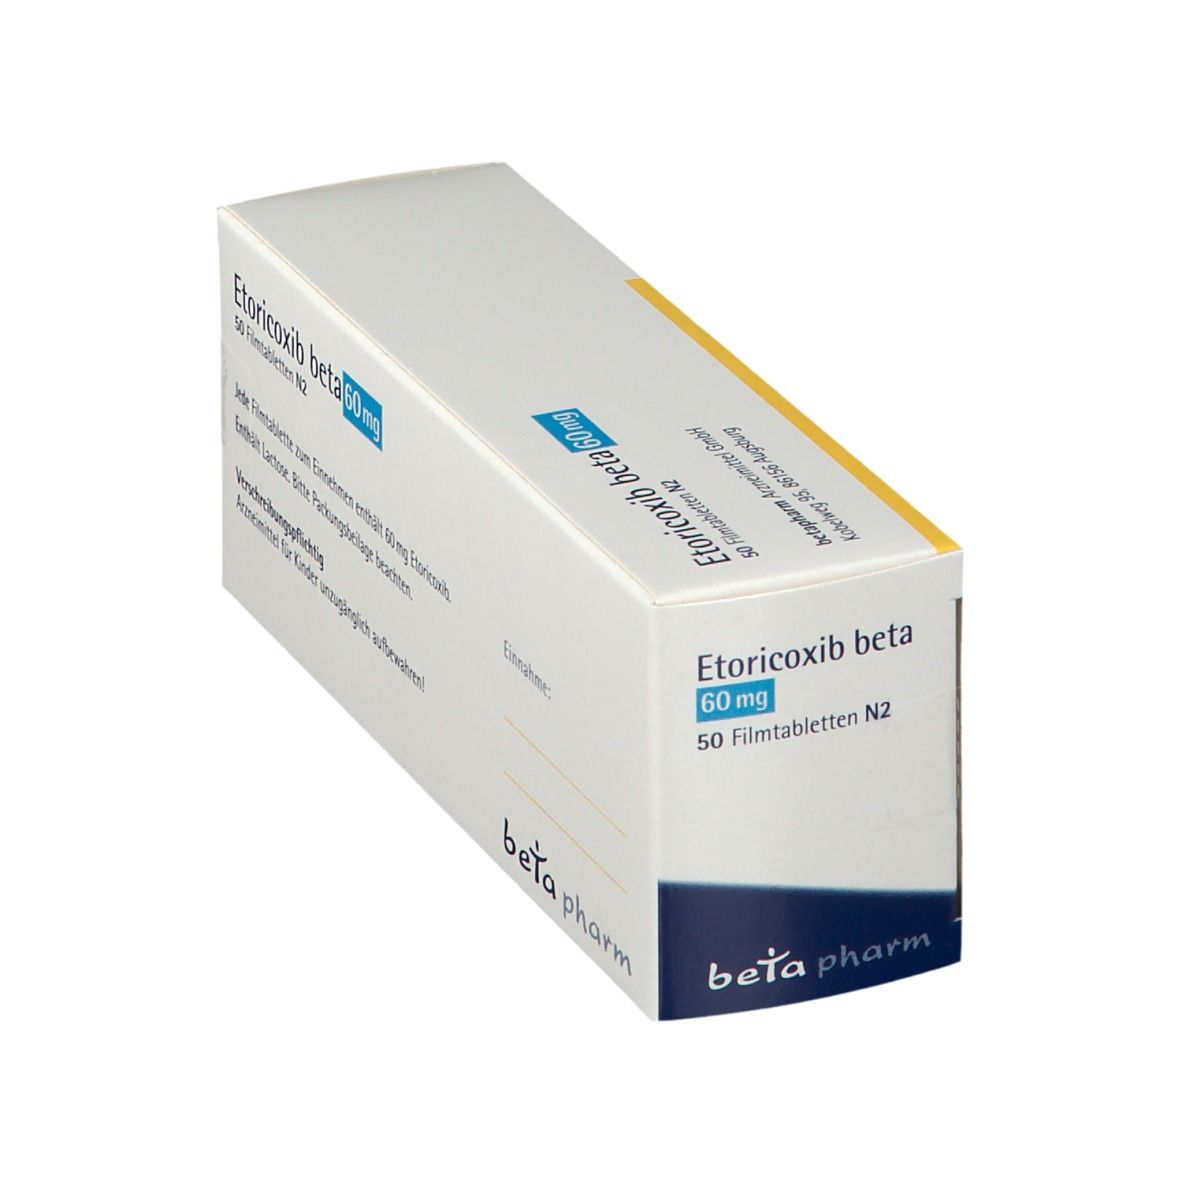 Etoricoxib beta 60 mg